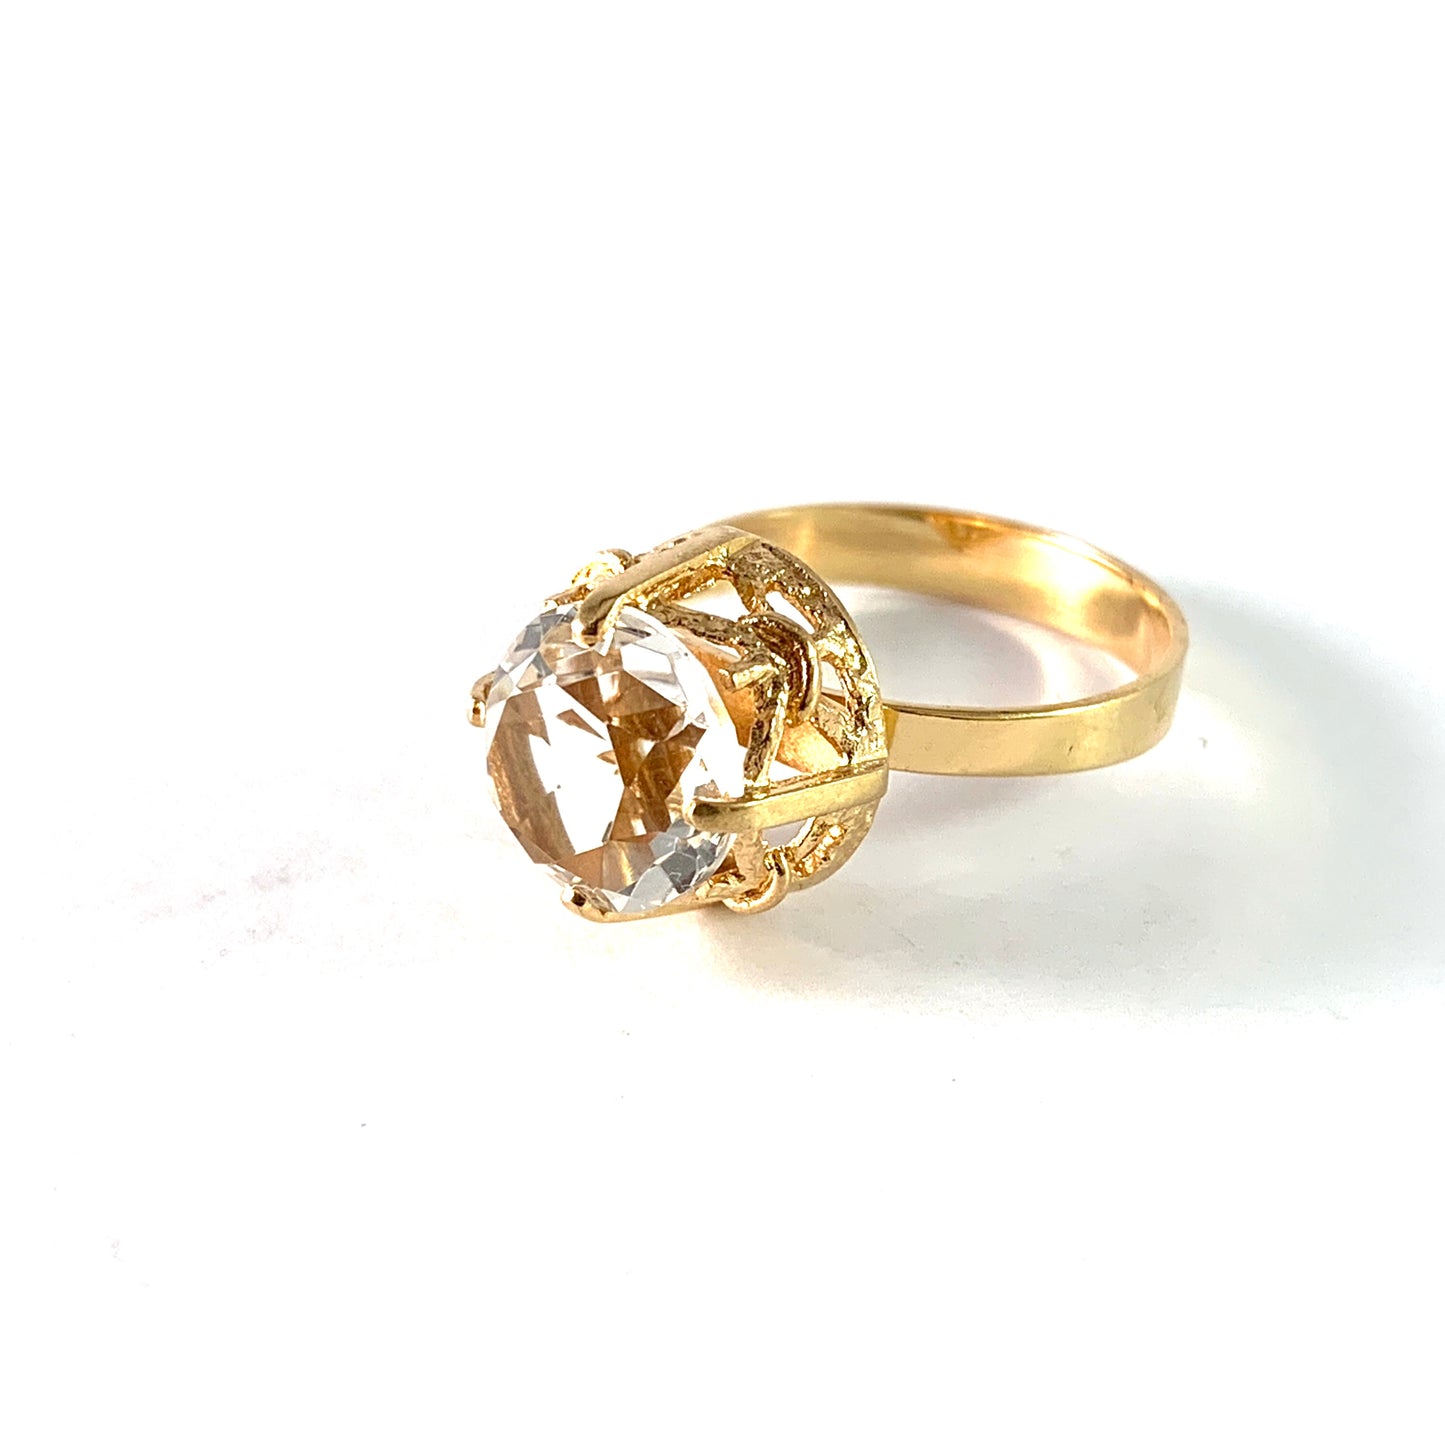 Finland 1970s. Vintage 18k Gold Rock Crystal Ring.